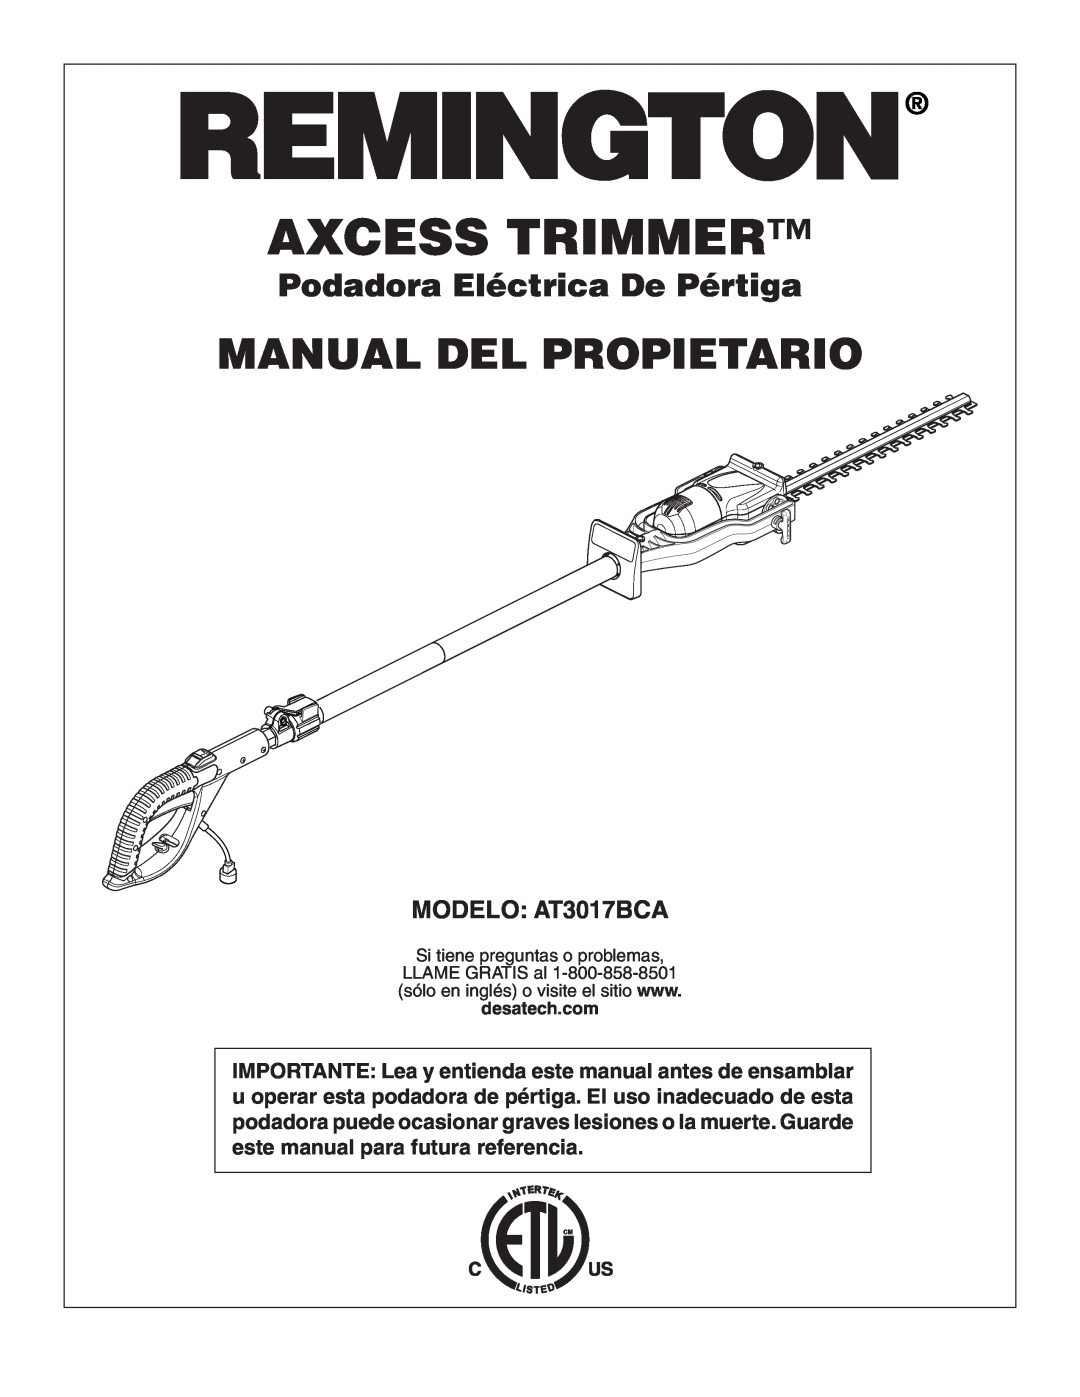 Remington owner manual Manual Del Propietario, Podadora Eléctrica De Pértiga, MODELO AT3017BCA, Axcess Trimmer 